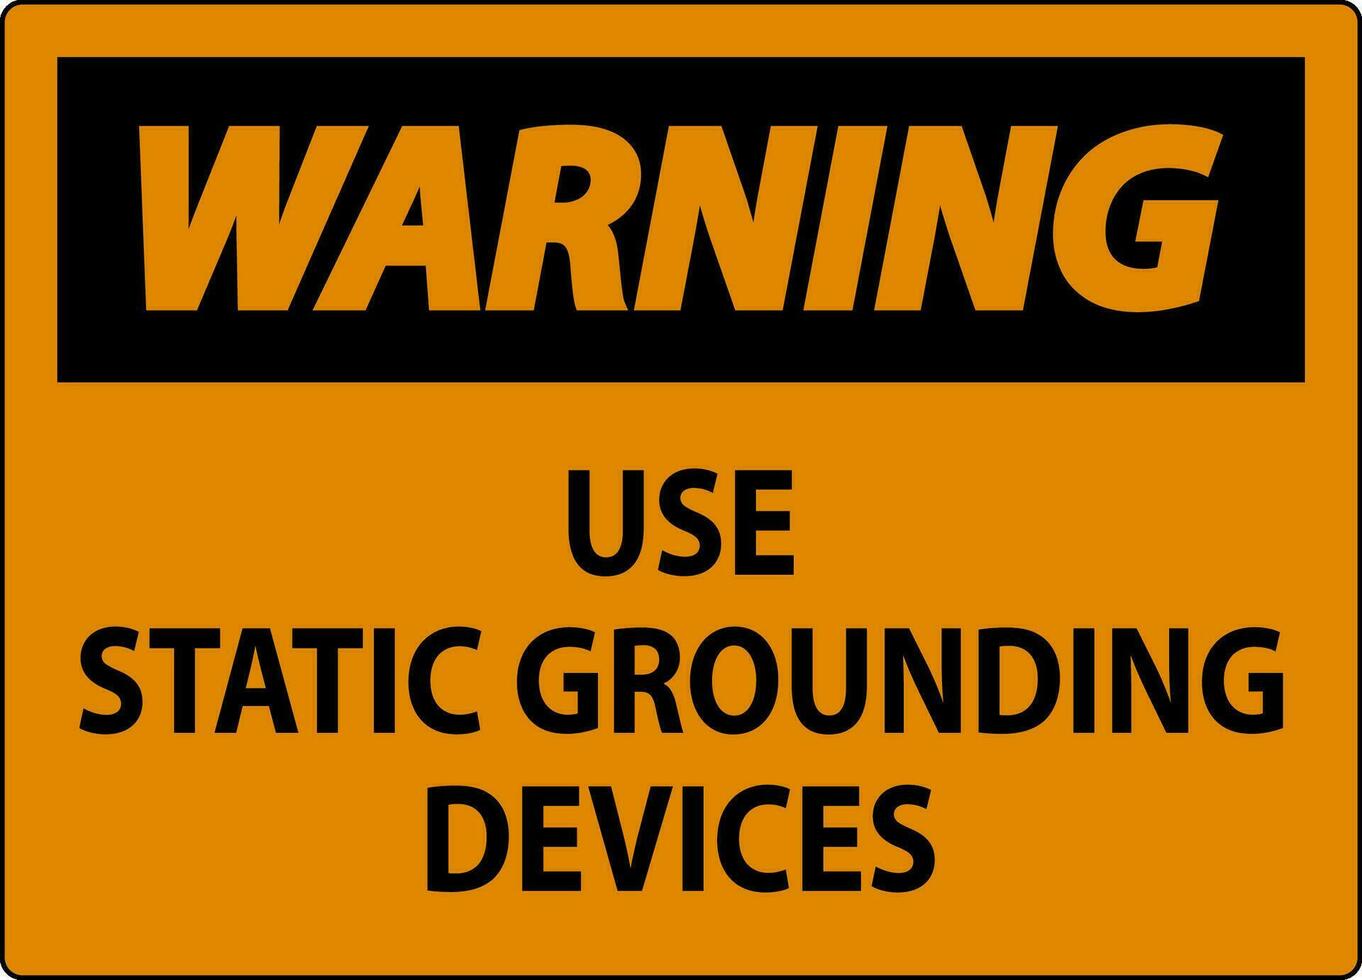 Atenção placa usar estático aterramento dispositivos vetor